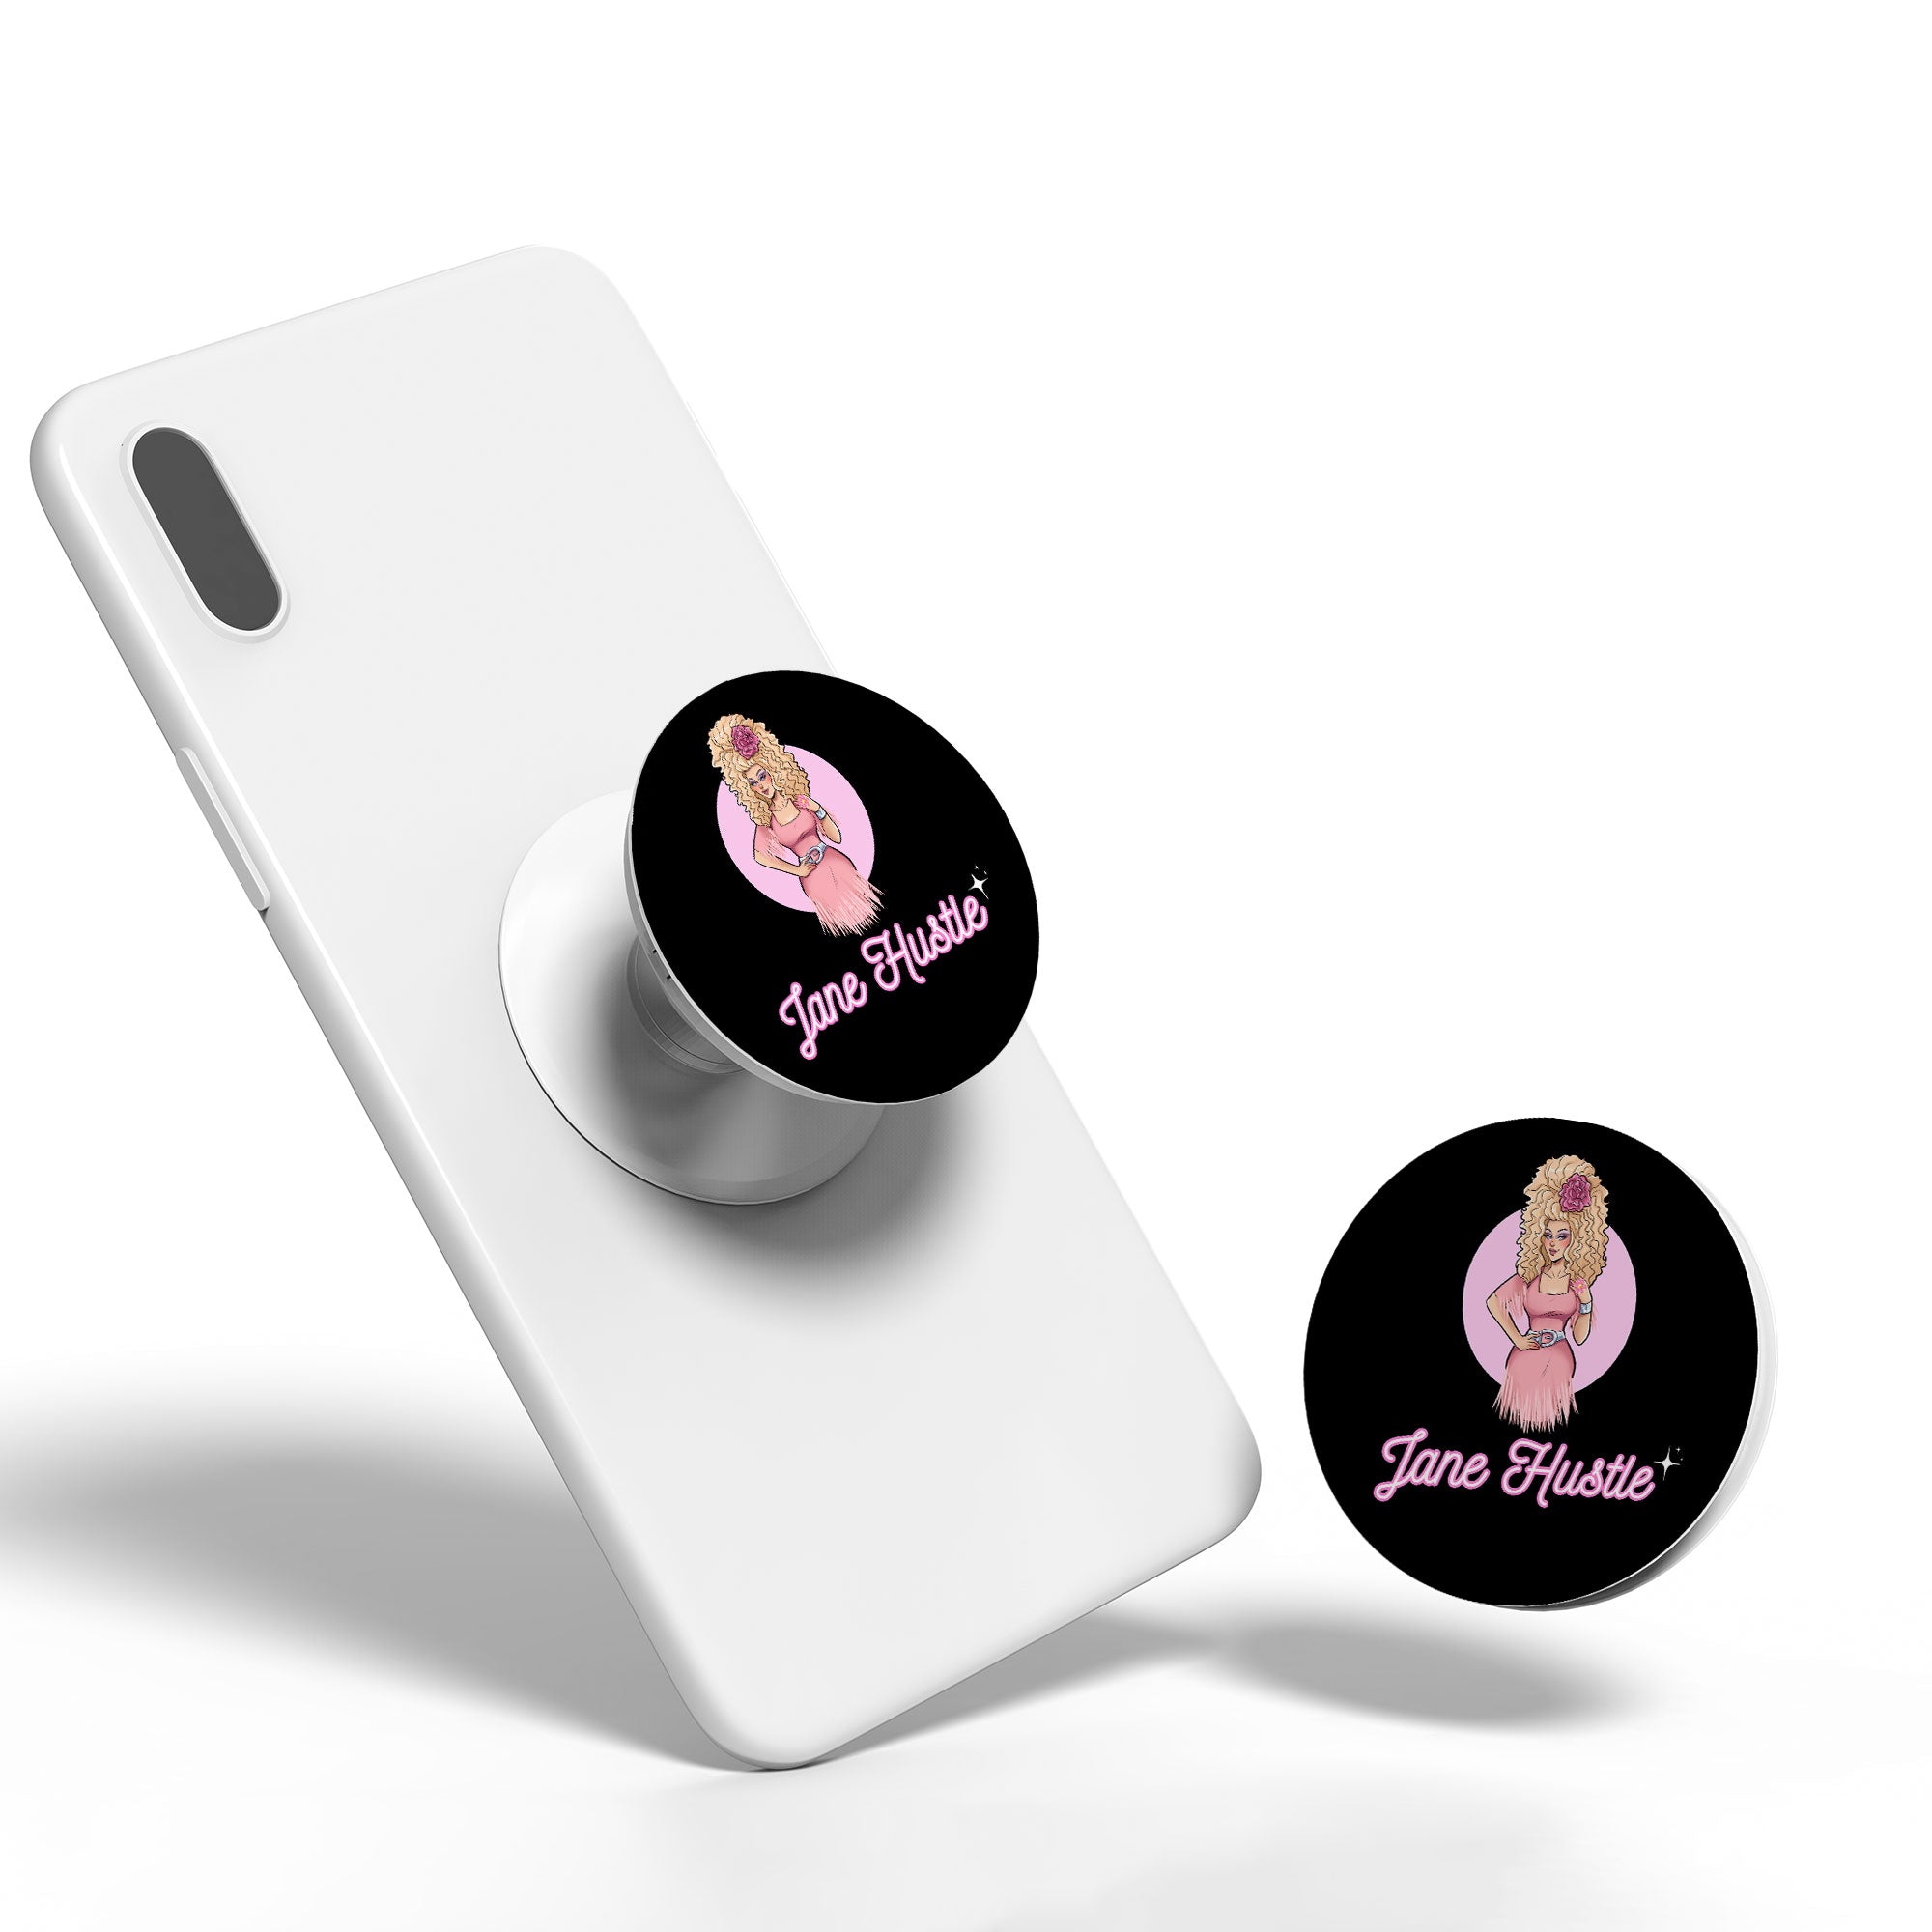 Jane Hustle - Logo Phone Holder